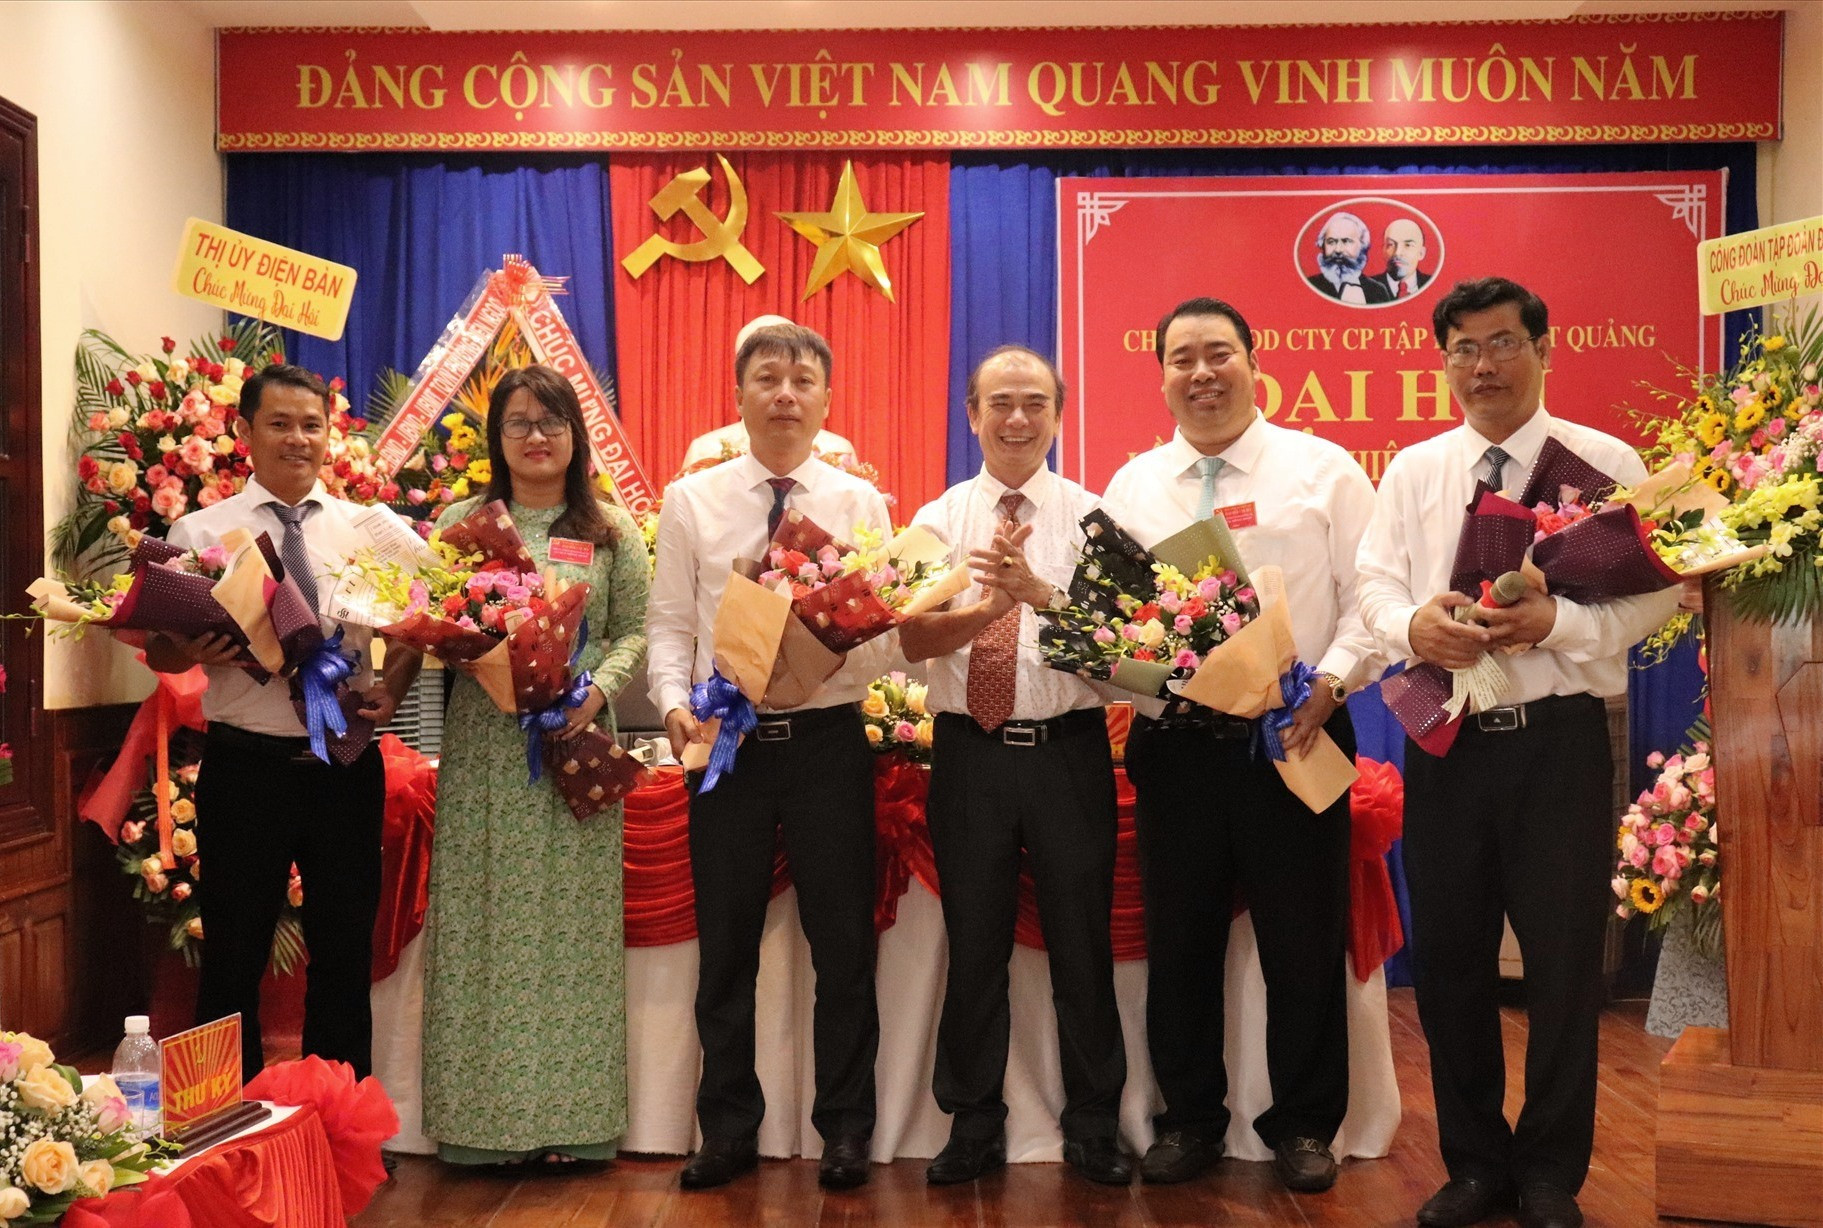 ông Nguyễn Viết Dũng - Chủ tịch HĐQT Tập đoàn Đất Quảng (thứ 2 từ phải sang) tiếp tục tái cử Bí thư Chi bộ Văn phòng đại diện của công ty